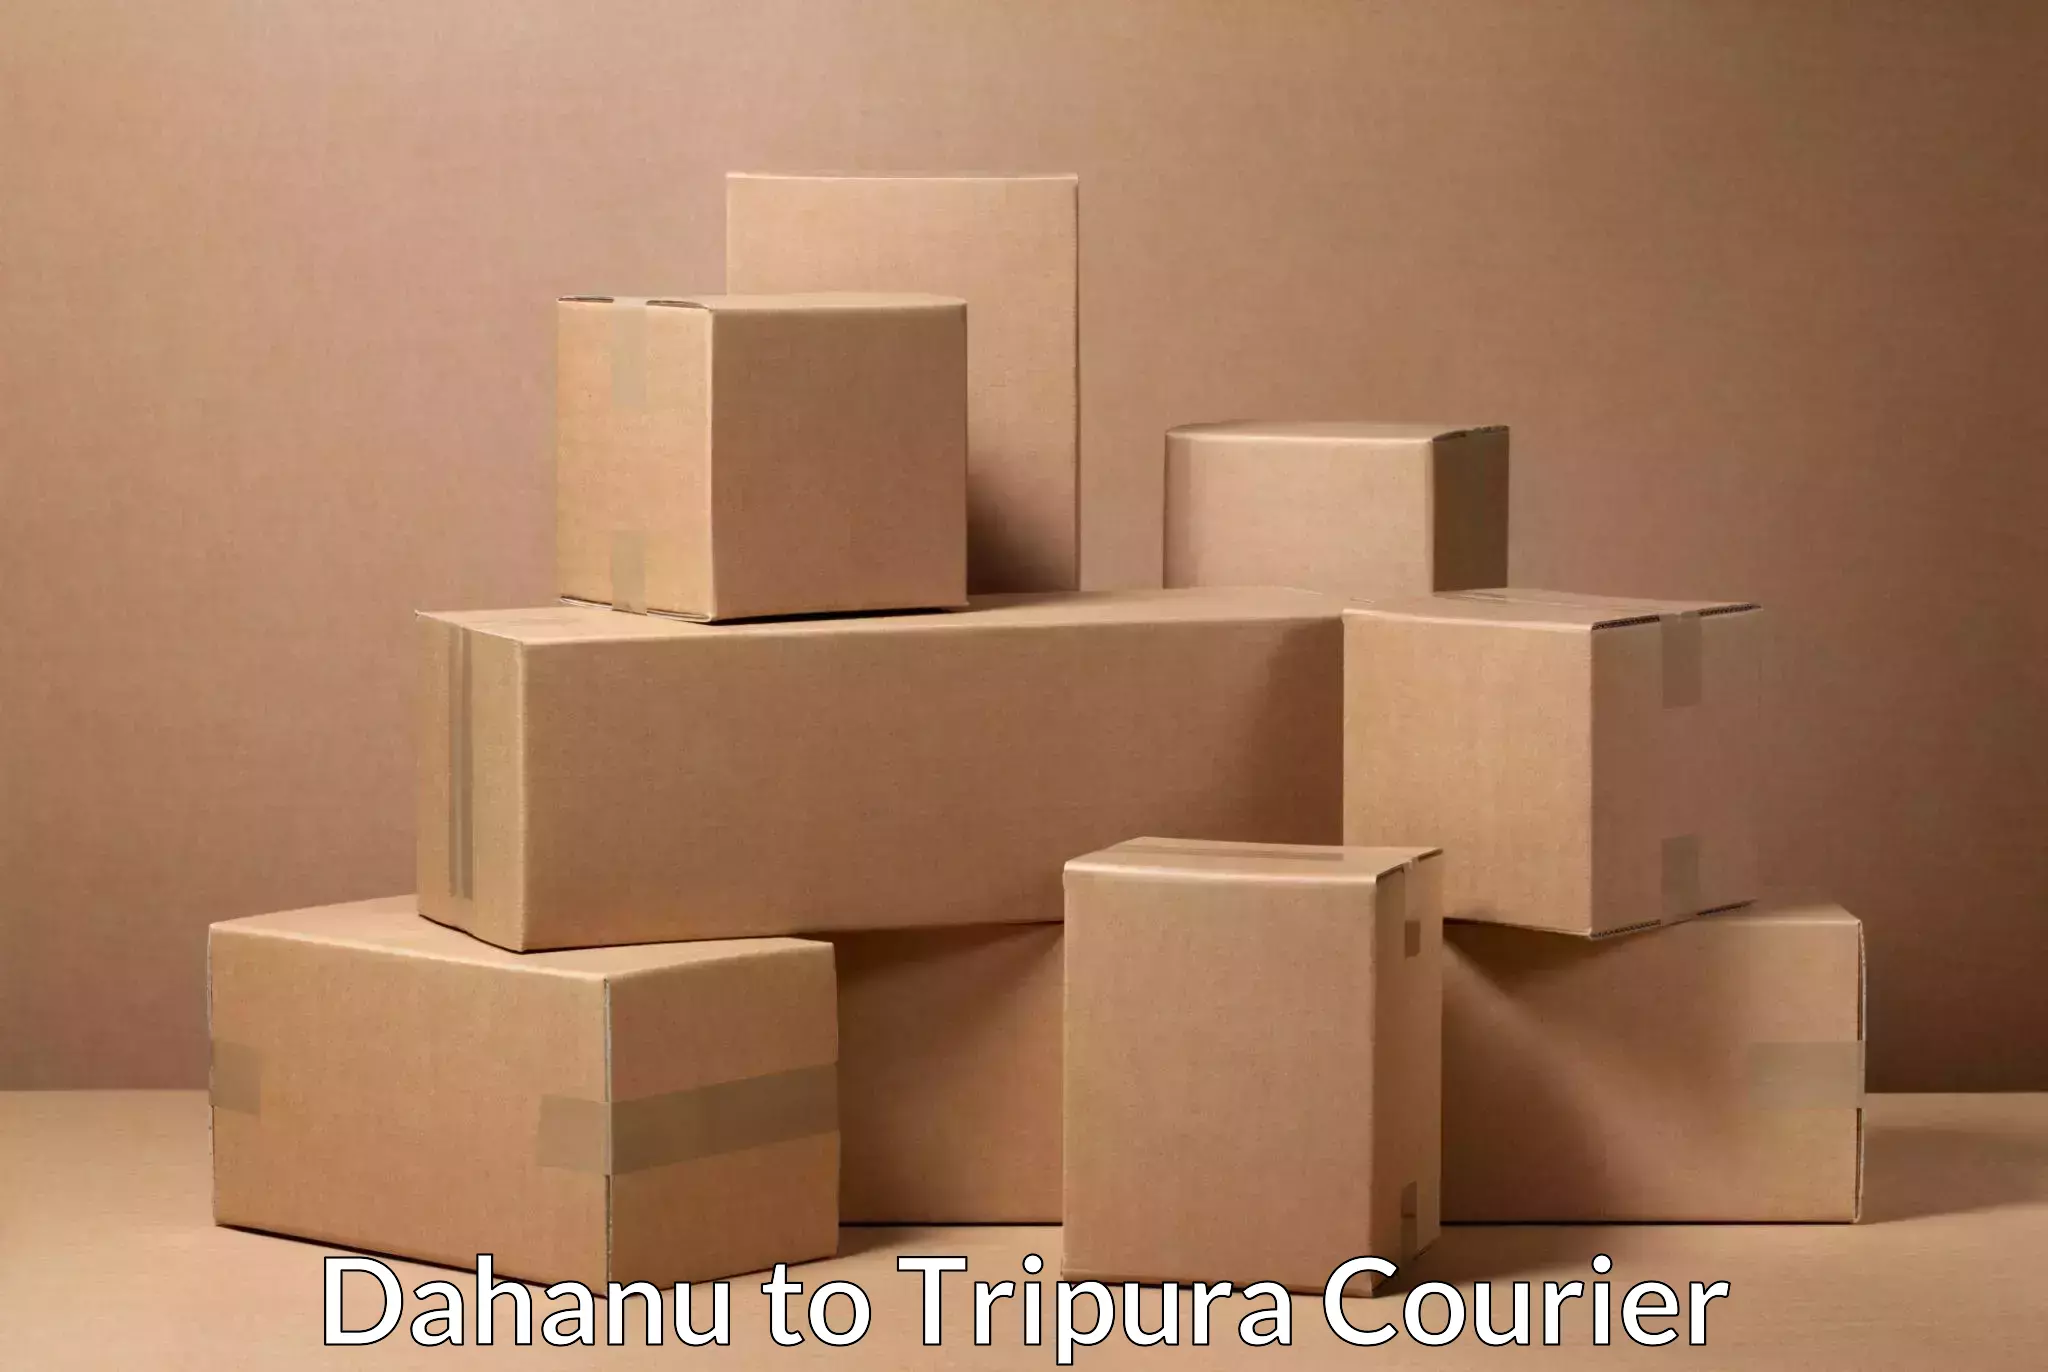 Professional parcel services Dahanu to West Tripura